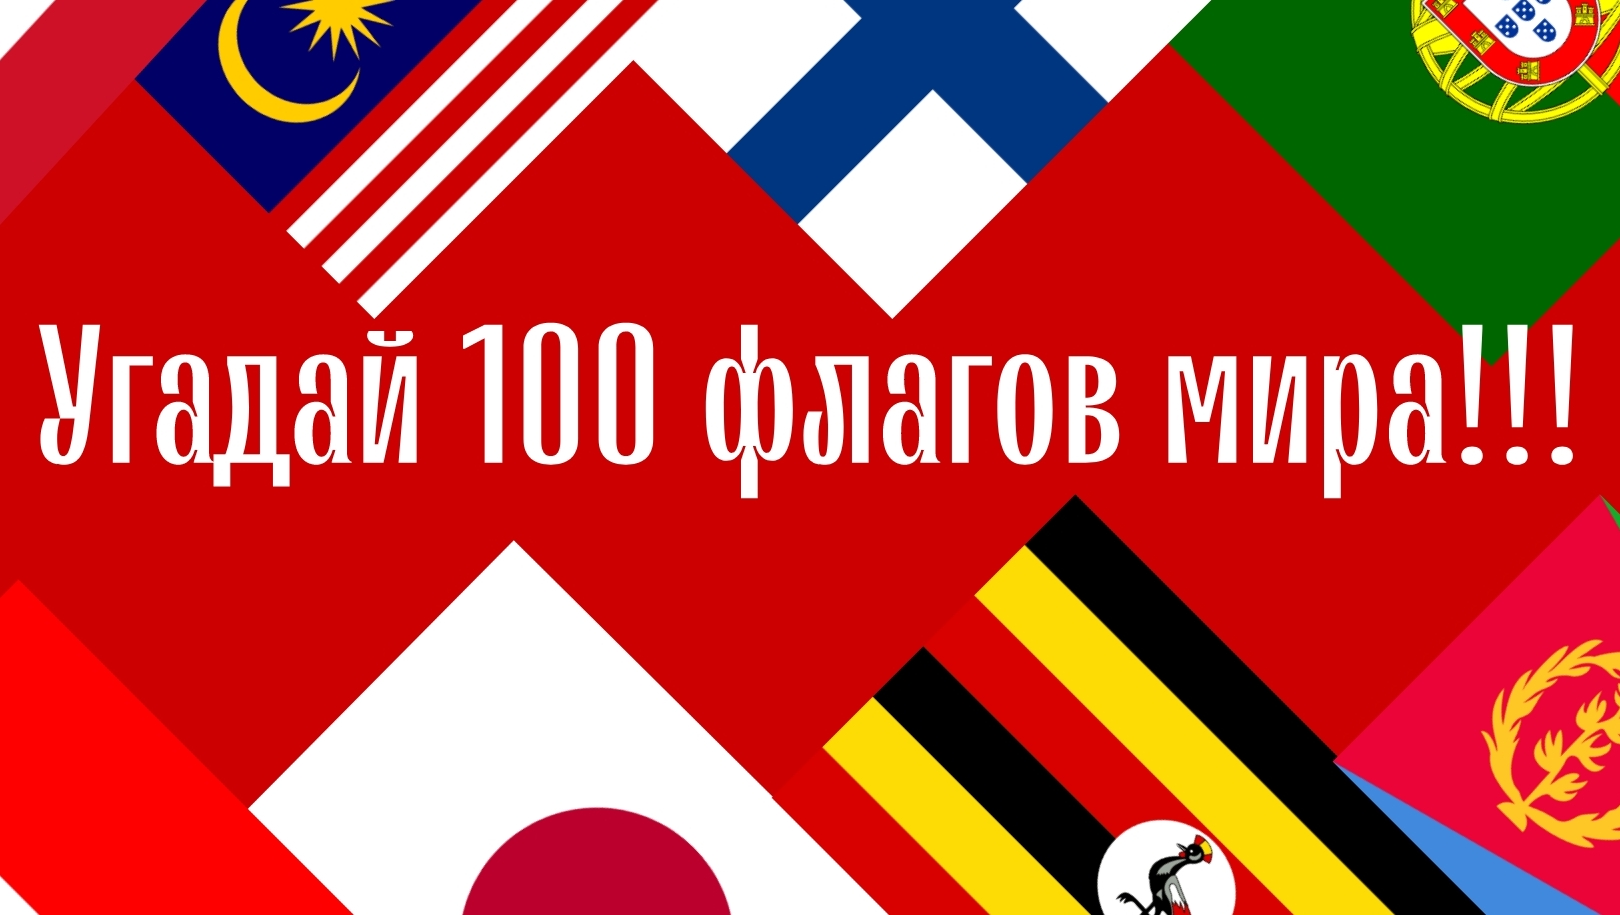 Угадай 100 стран мира по флагу за 7 секунд!